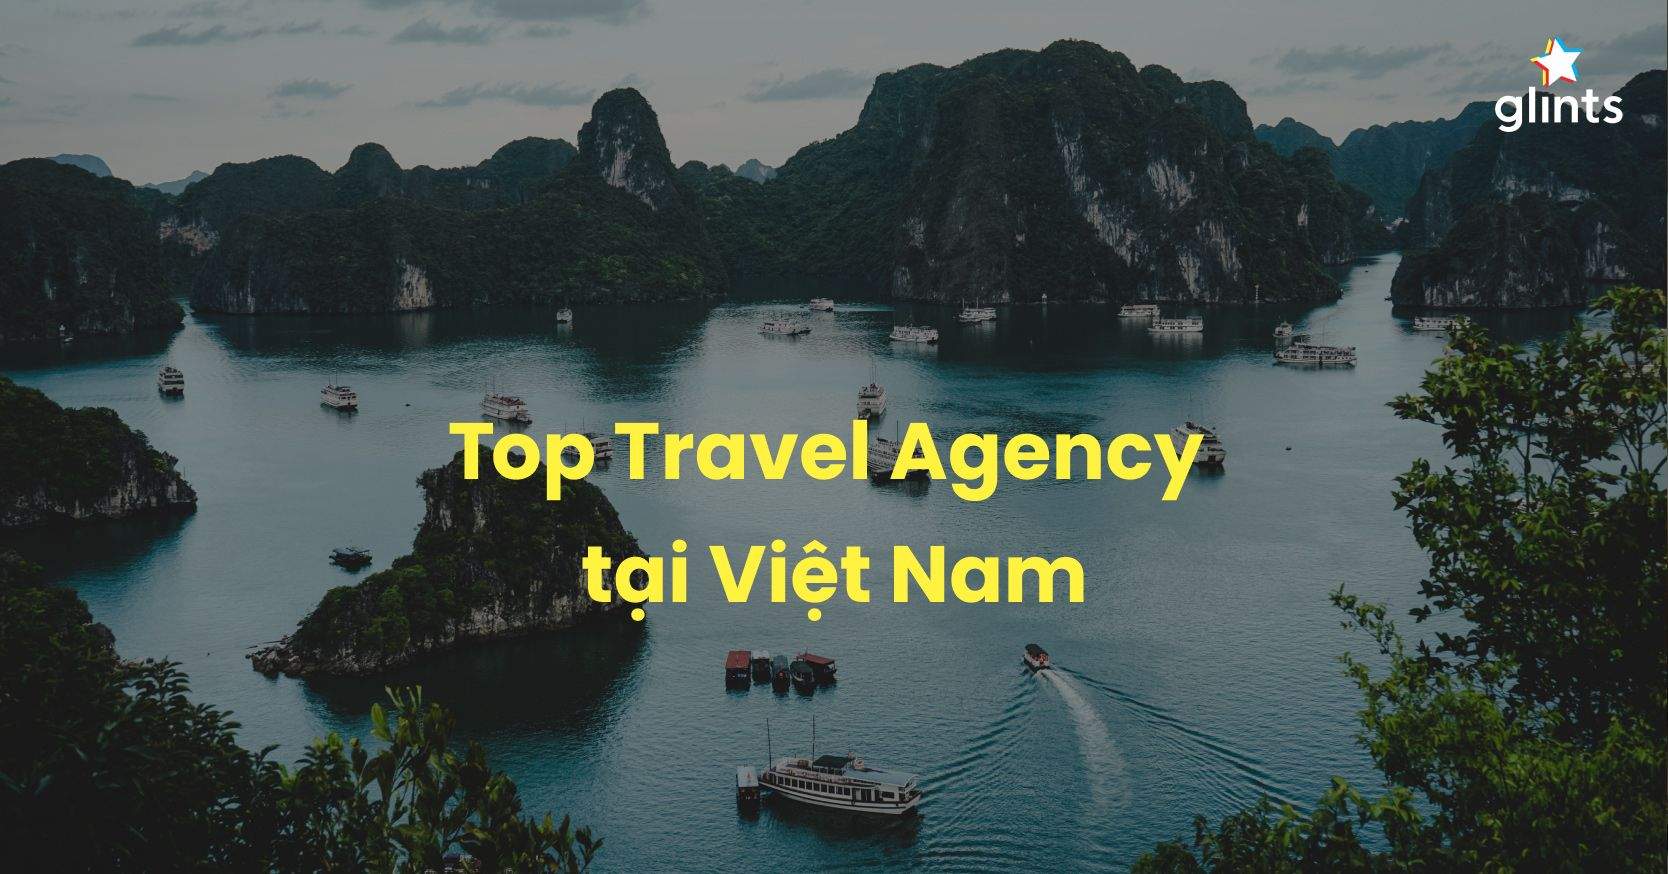 Travel Agency Là Gì? Top 6 Travel Agency Tại Việt Nam